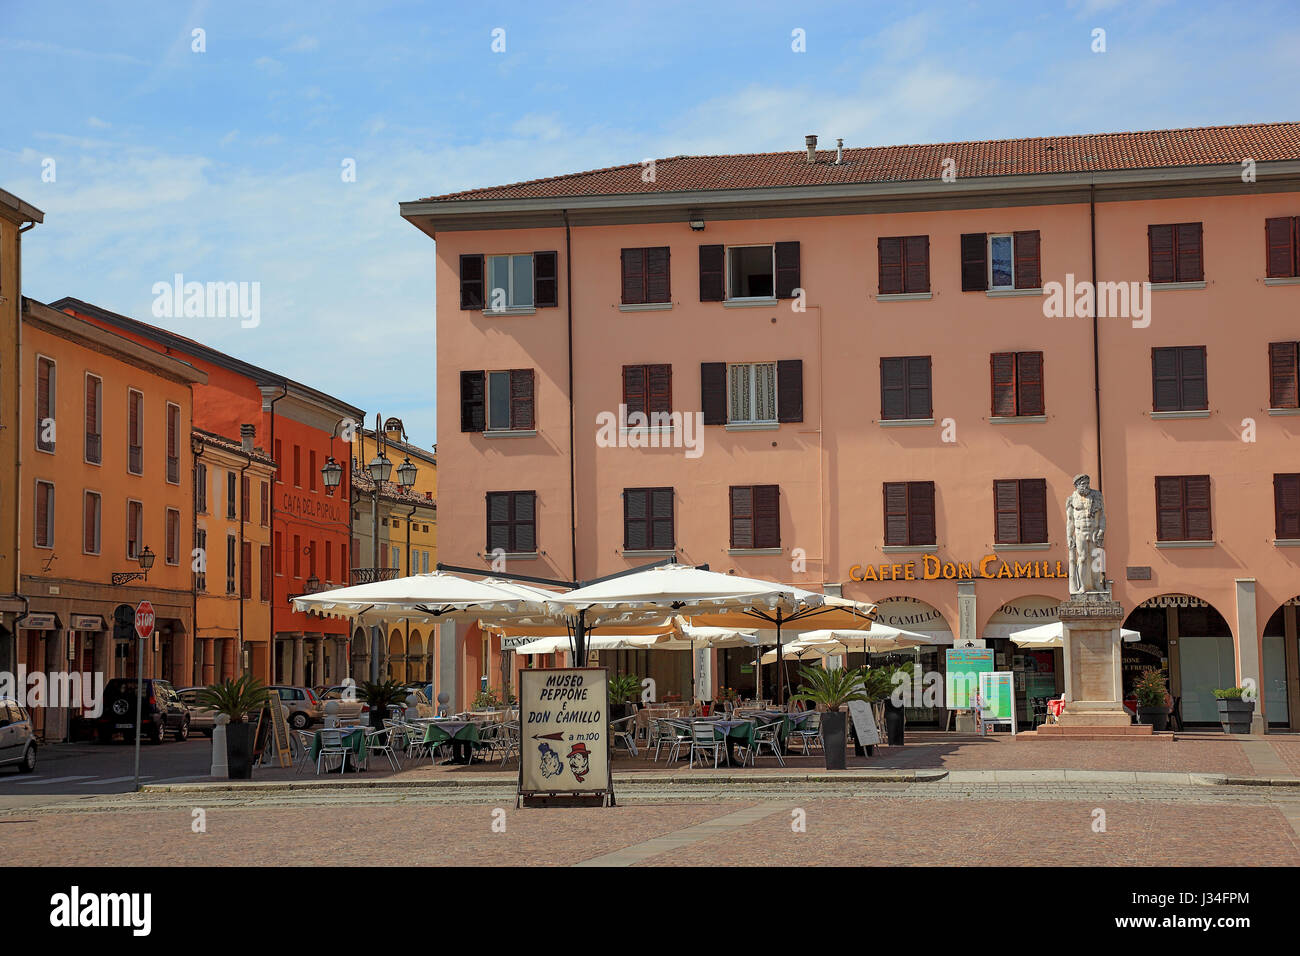 the cafe Don Camillo at the market square, Brescello, Province of Reggio Emilia, Emilia-Romagna, Italy Stock Photo